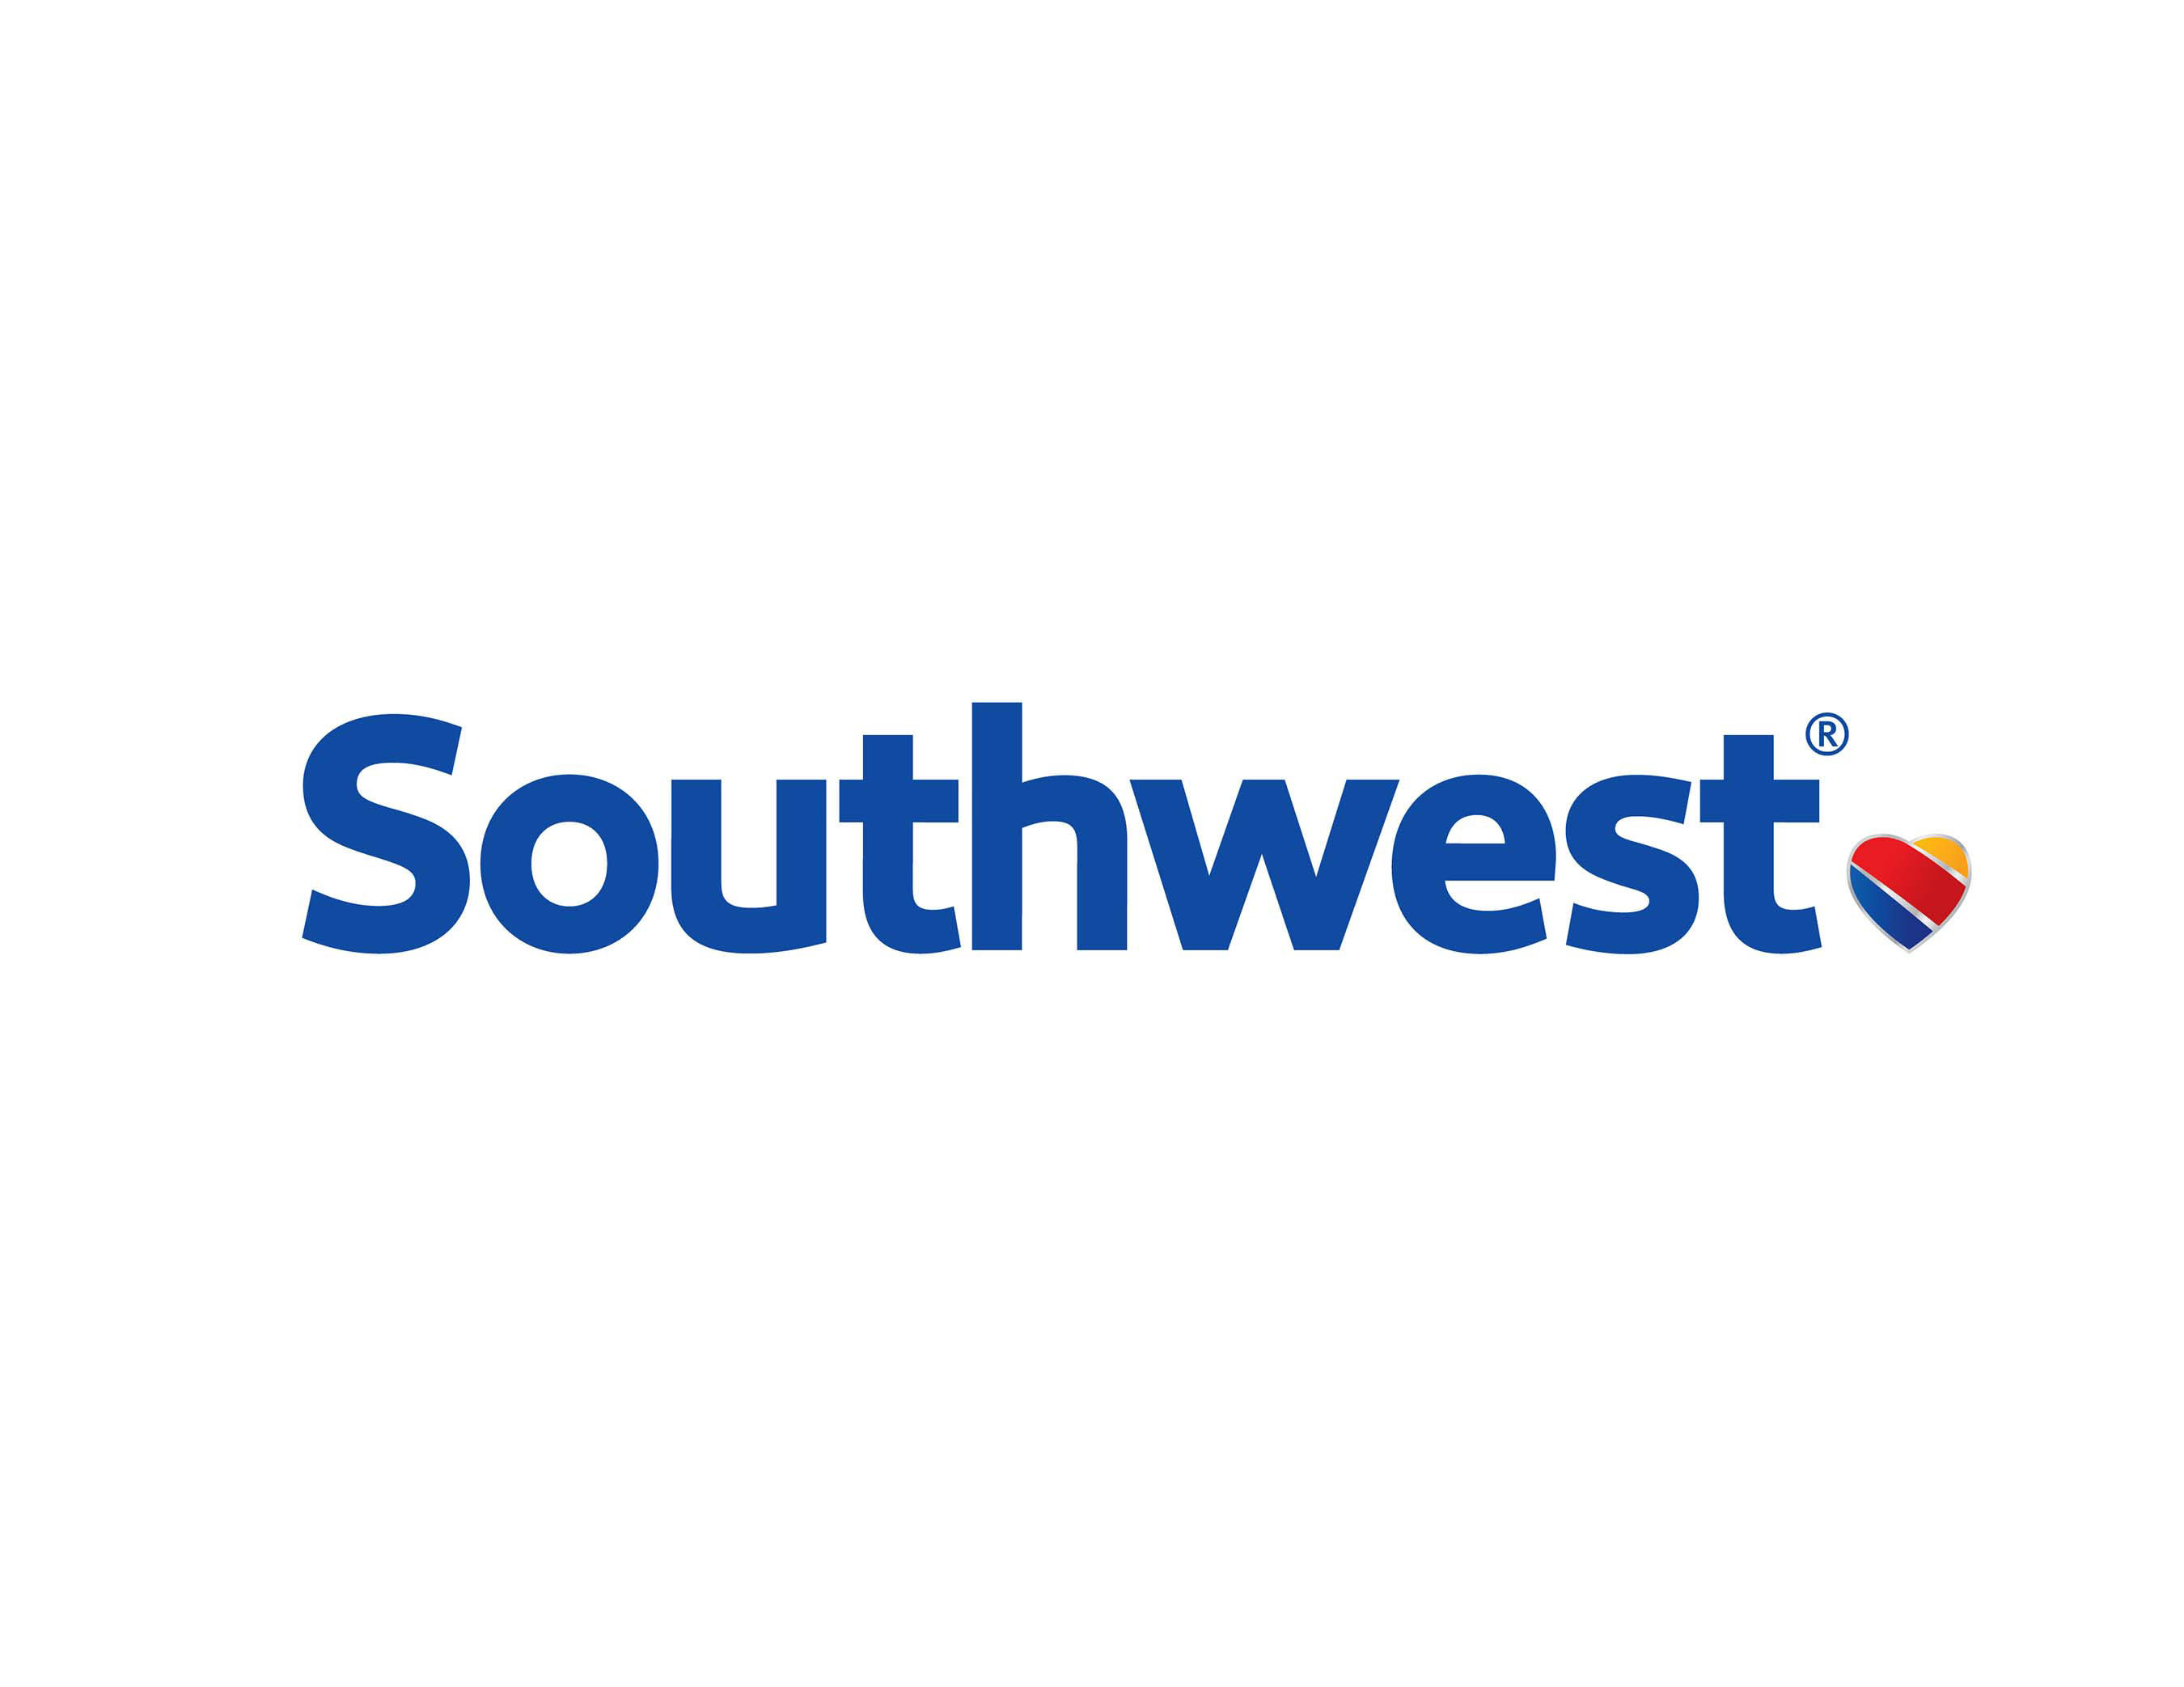 Southwest Airlines logo. (PRNewsFoto/SOUTHWEST AIRLINES) (PRNewsFoto/)